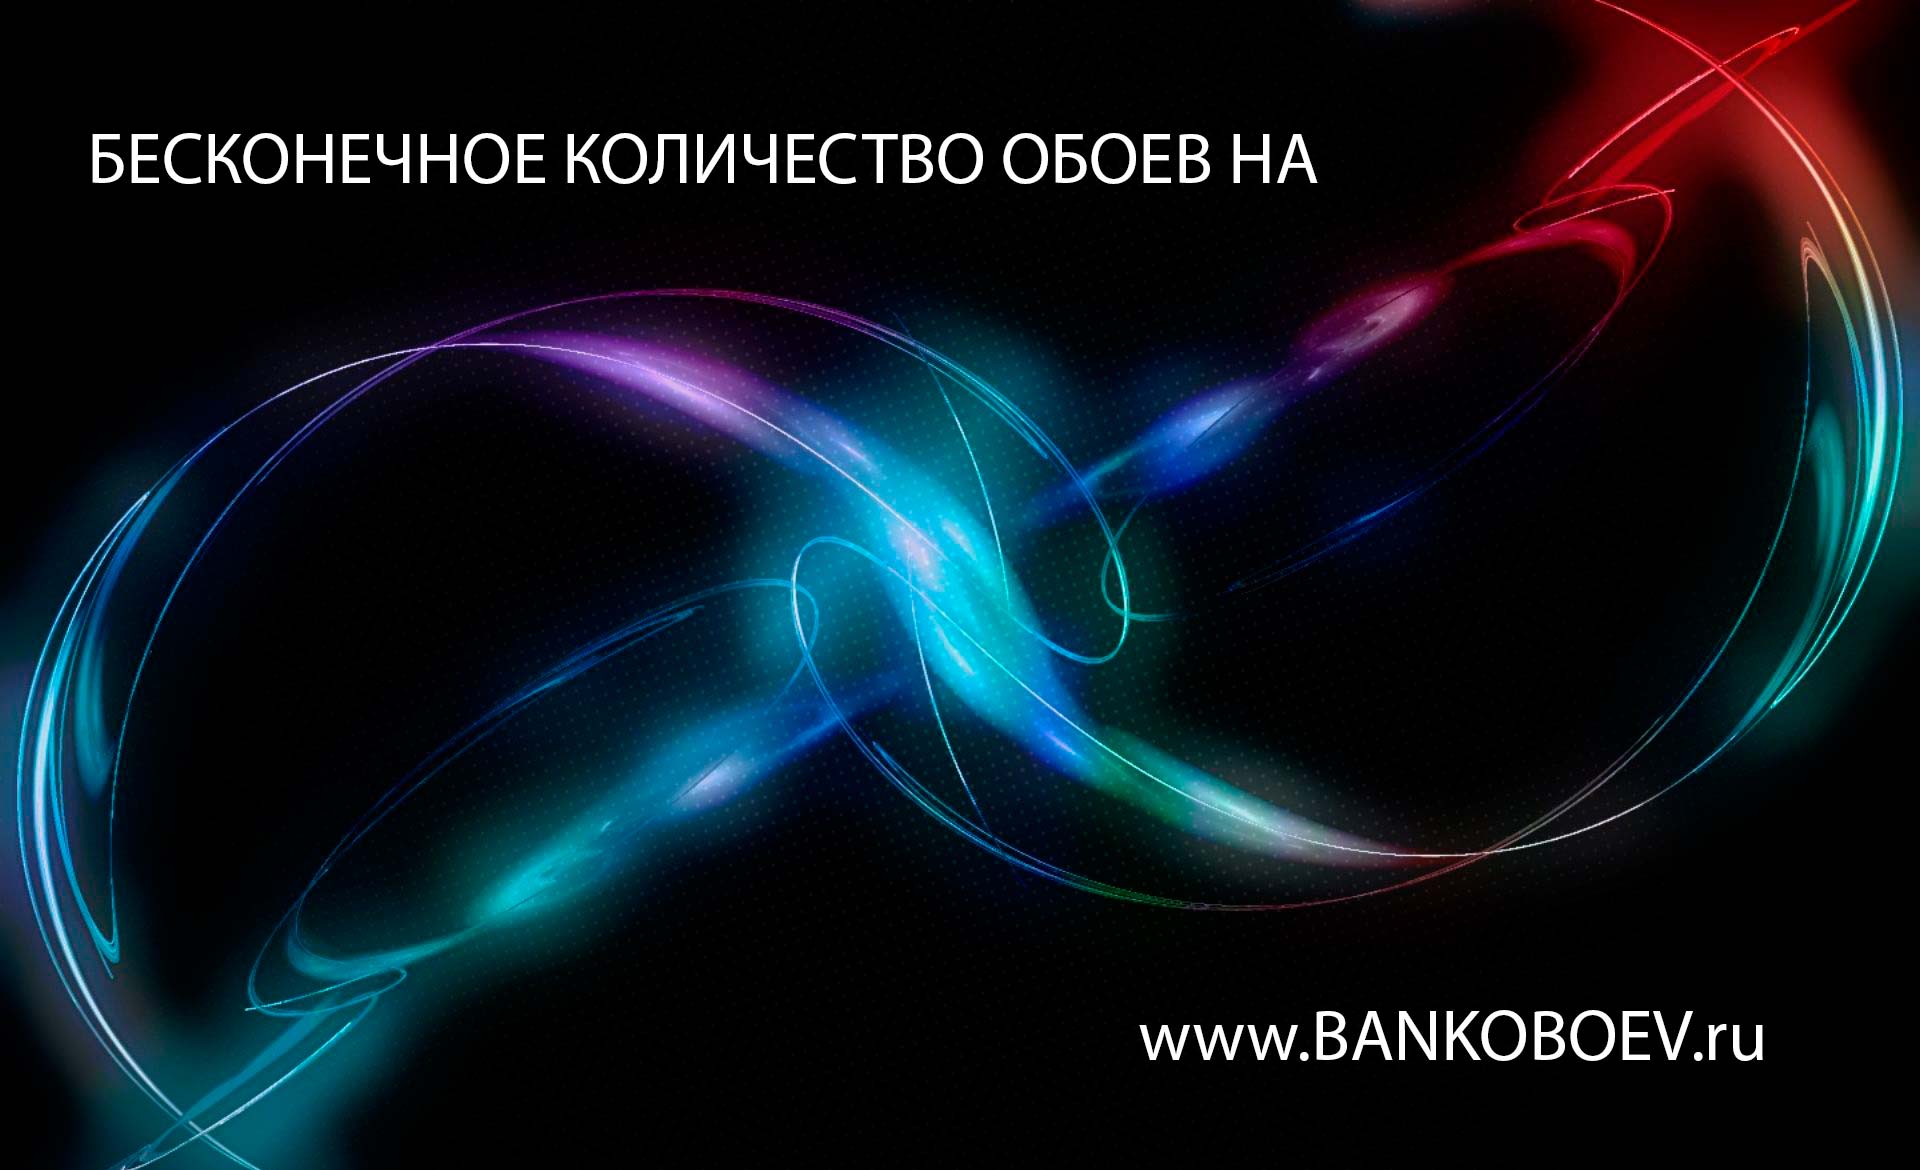 Bankoboev Ru Image Mzm1nzk Jpg